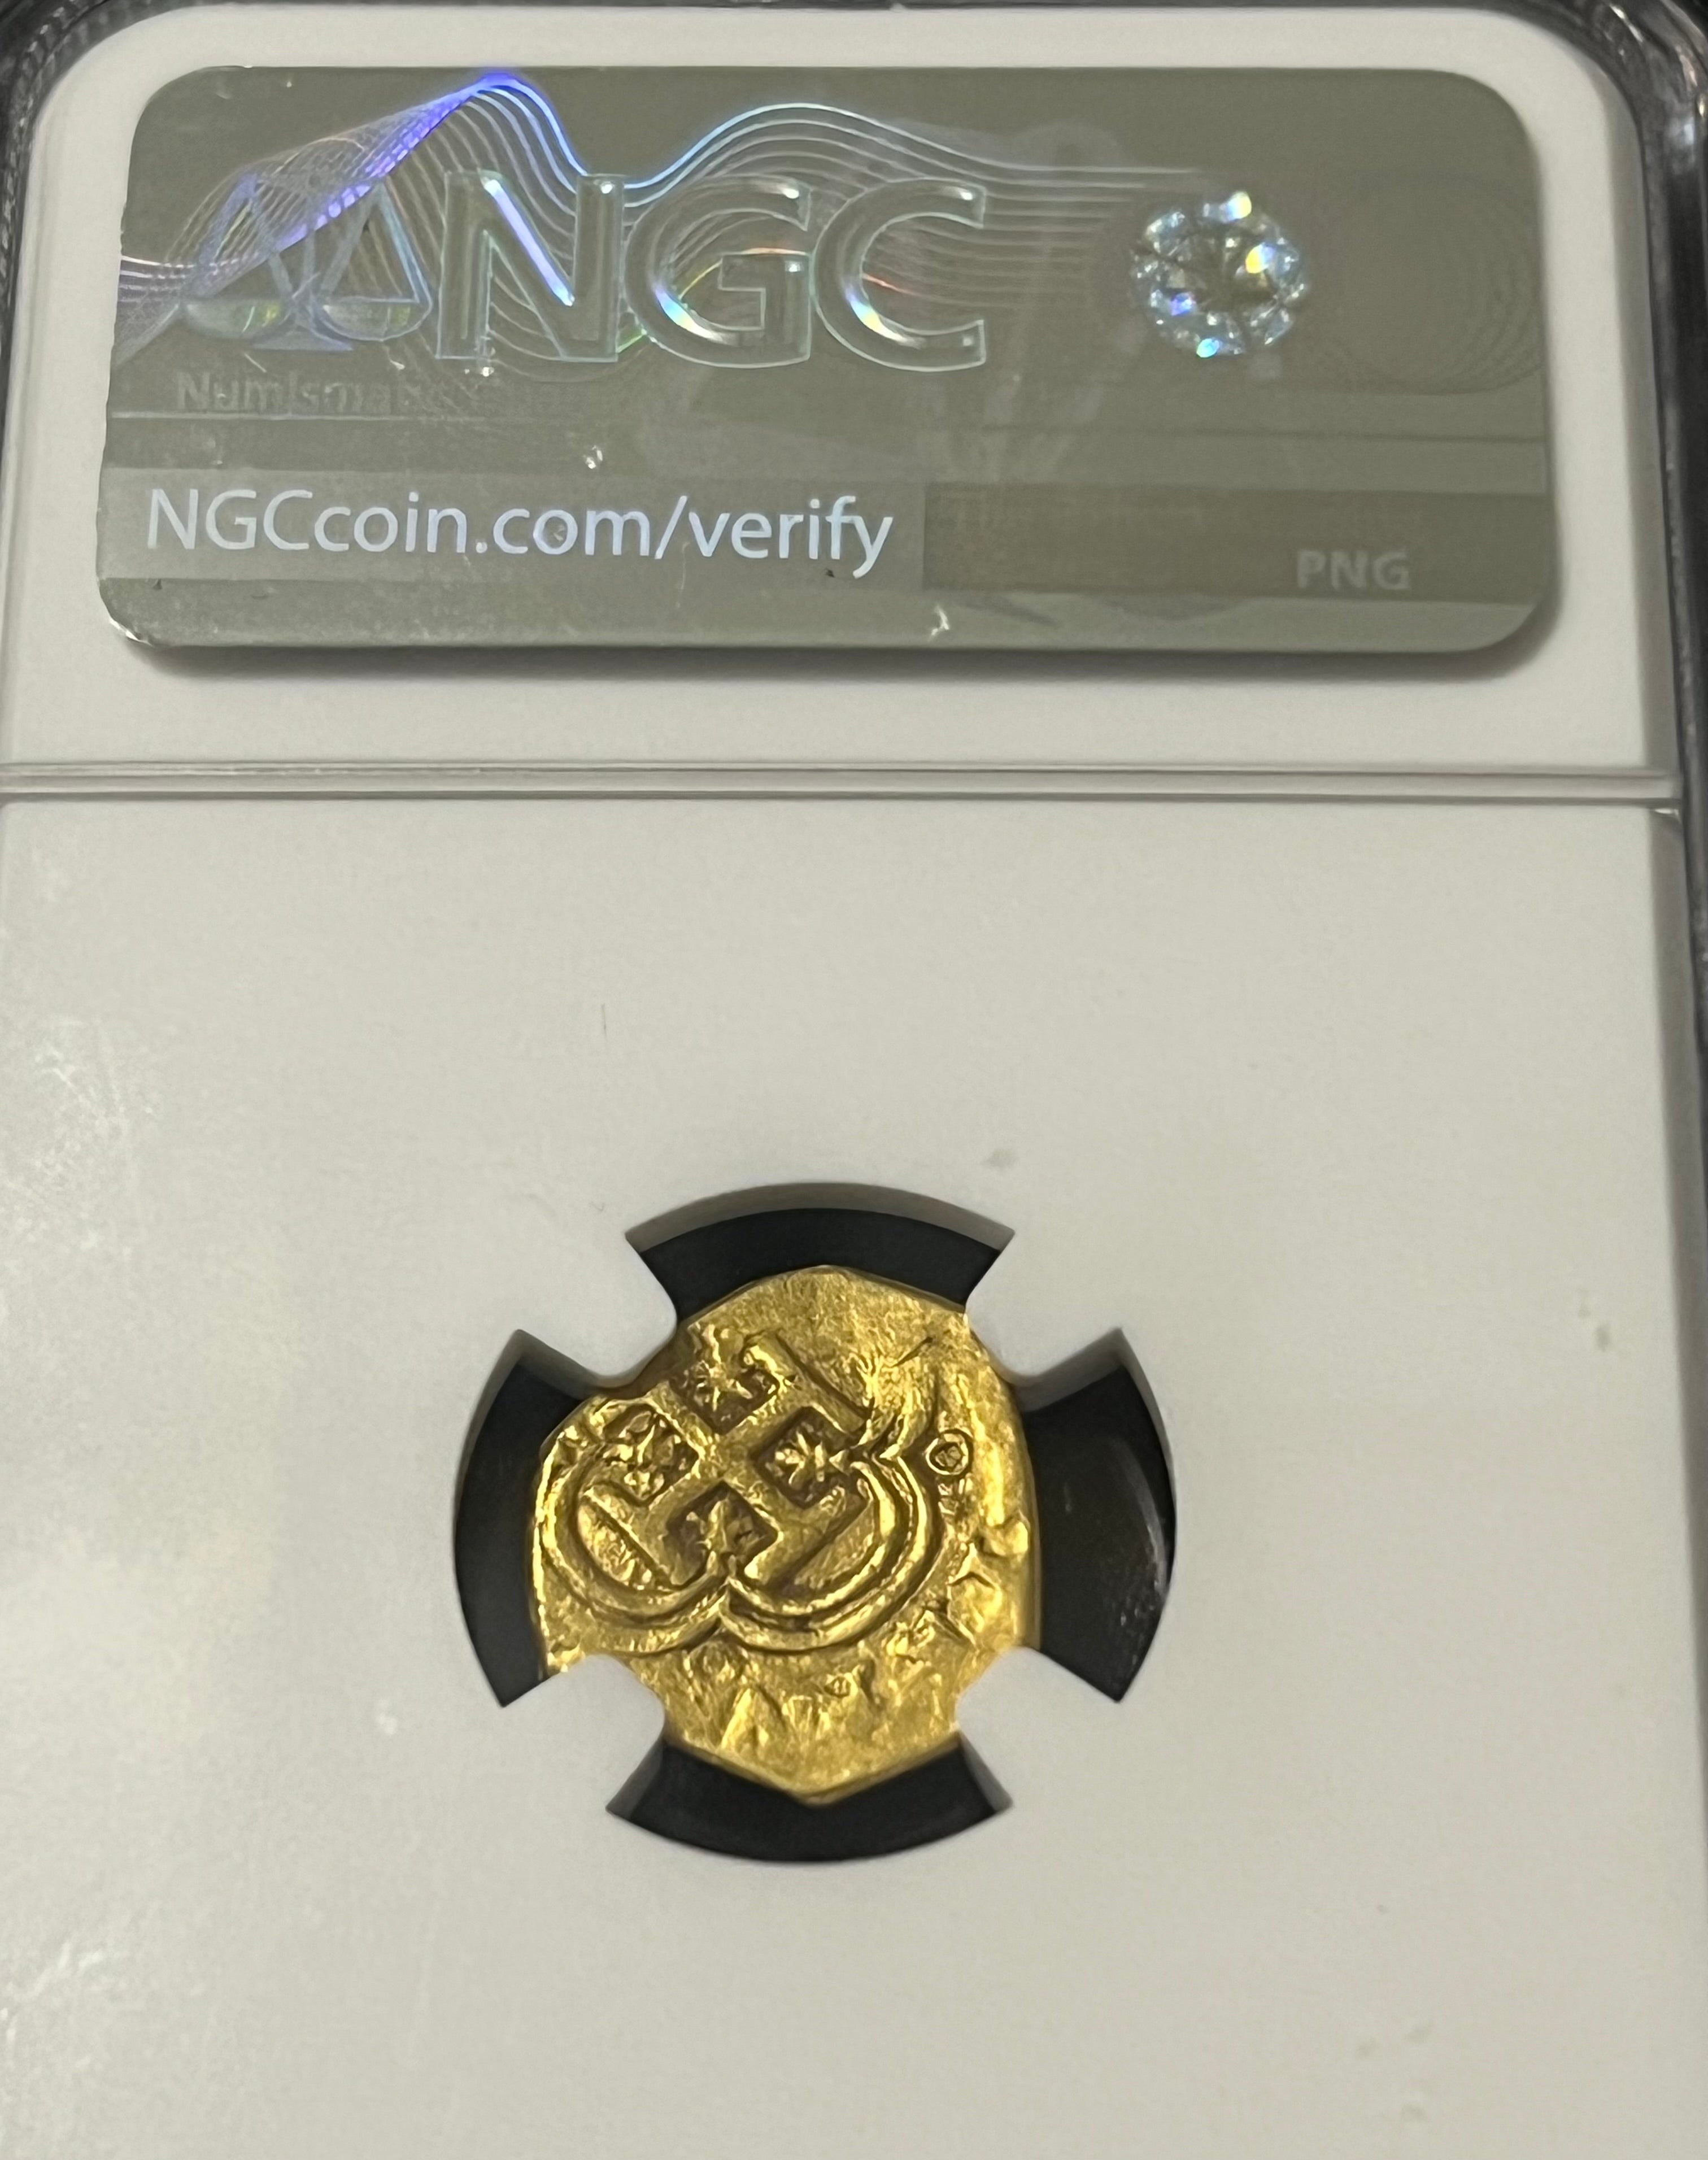 1 Escudo Spain Gold Coin NGC Grade AU 58